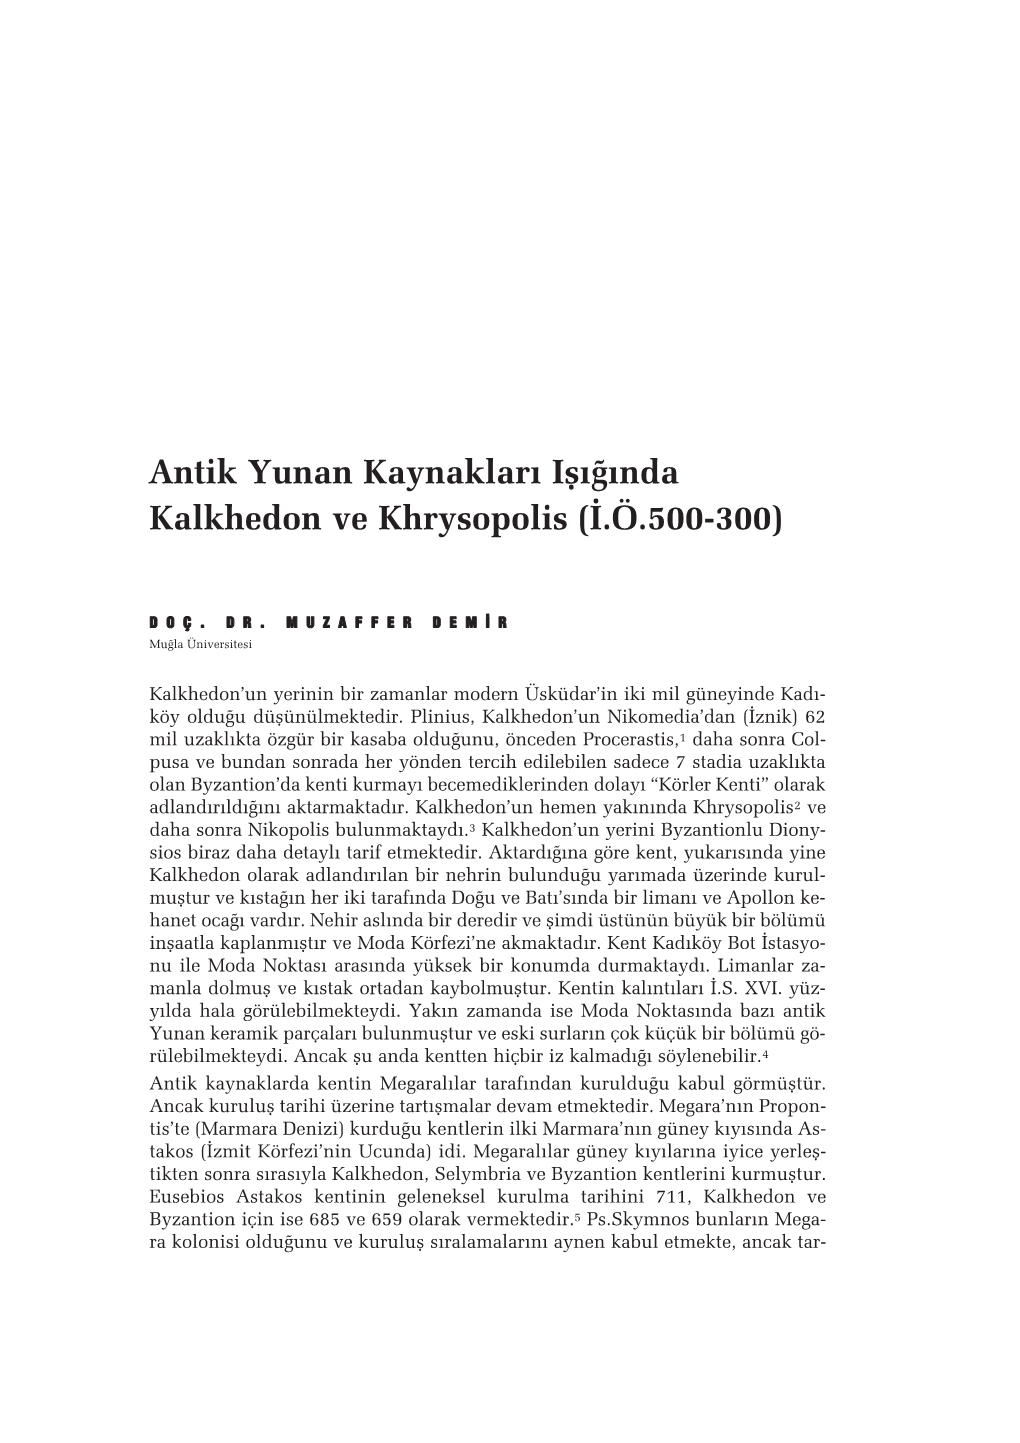 Antik Yunan Kaynaklar› Ifl›¤›Nda Kalkhedon Ve Khrysopolis